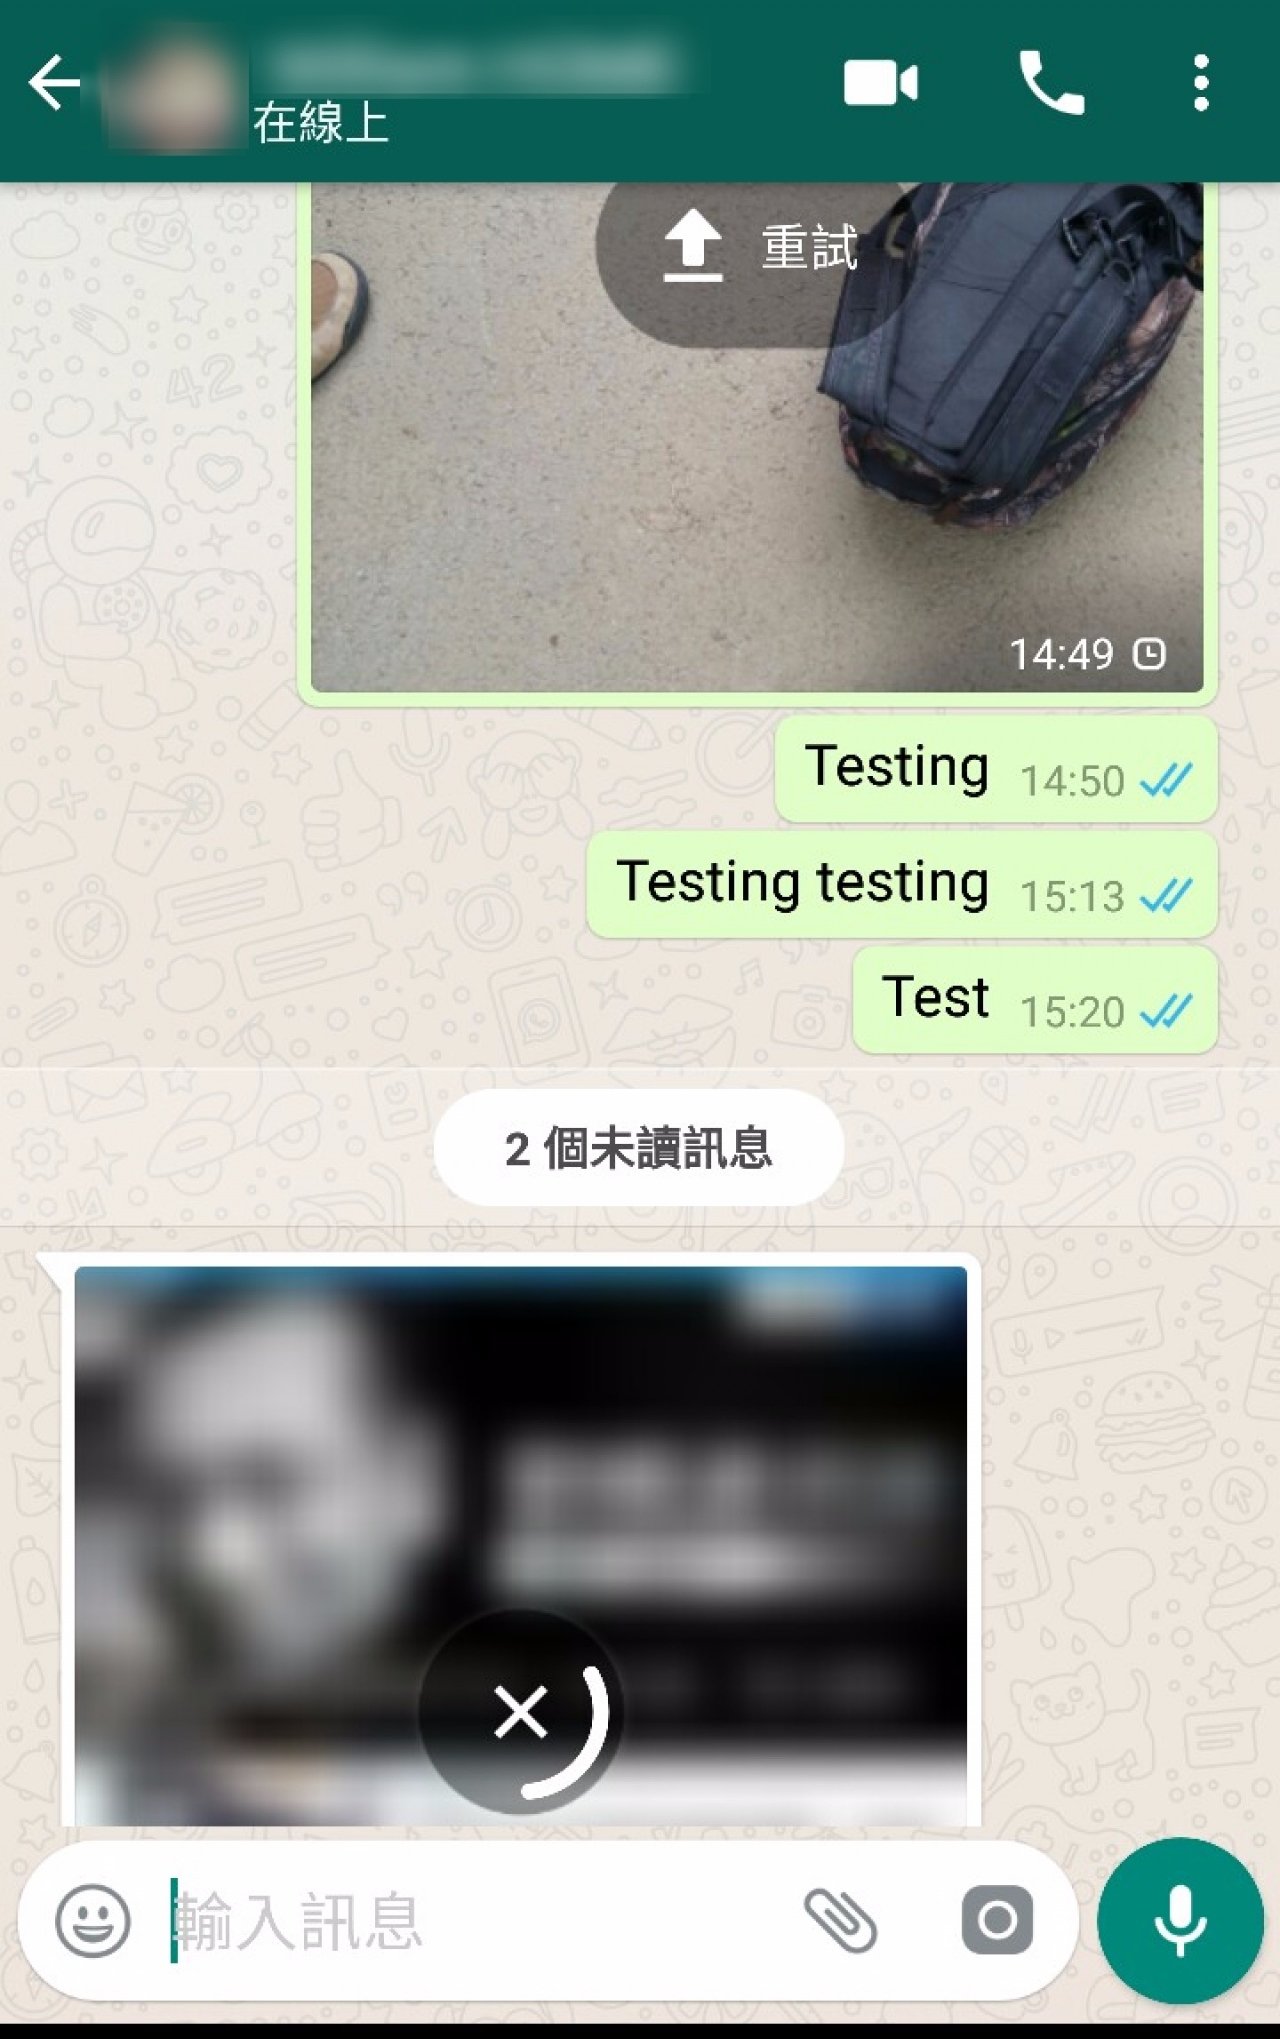 香港媒体记者实测，发现不能透过WhatsApp传送或接收图片及短片。